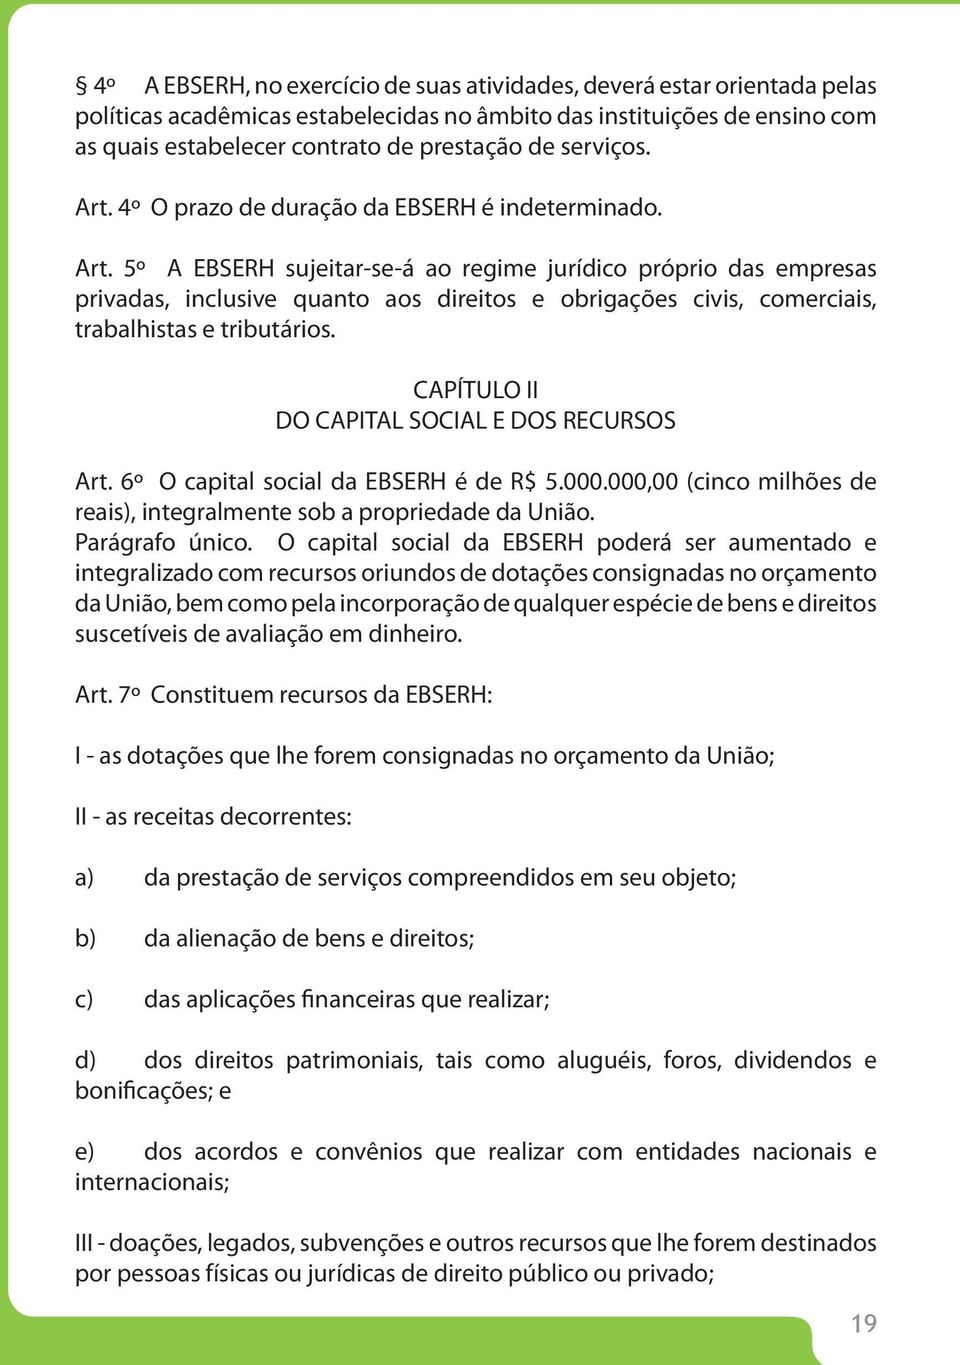 CAPÍTULO II DO CAPITAL SOCIAL E DOS RECURSOS Art. 6º O capital social da EBSERH é de R$ 5.000.000,00 (cinco milhões de reais), integralmente sob a propriedade da União. Parágrafo único.